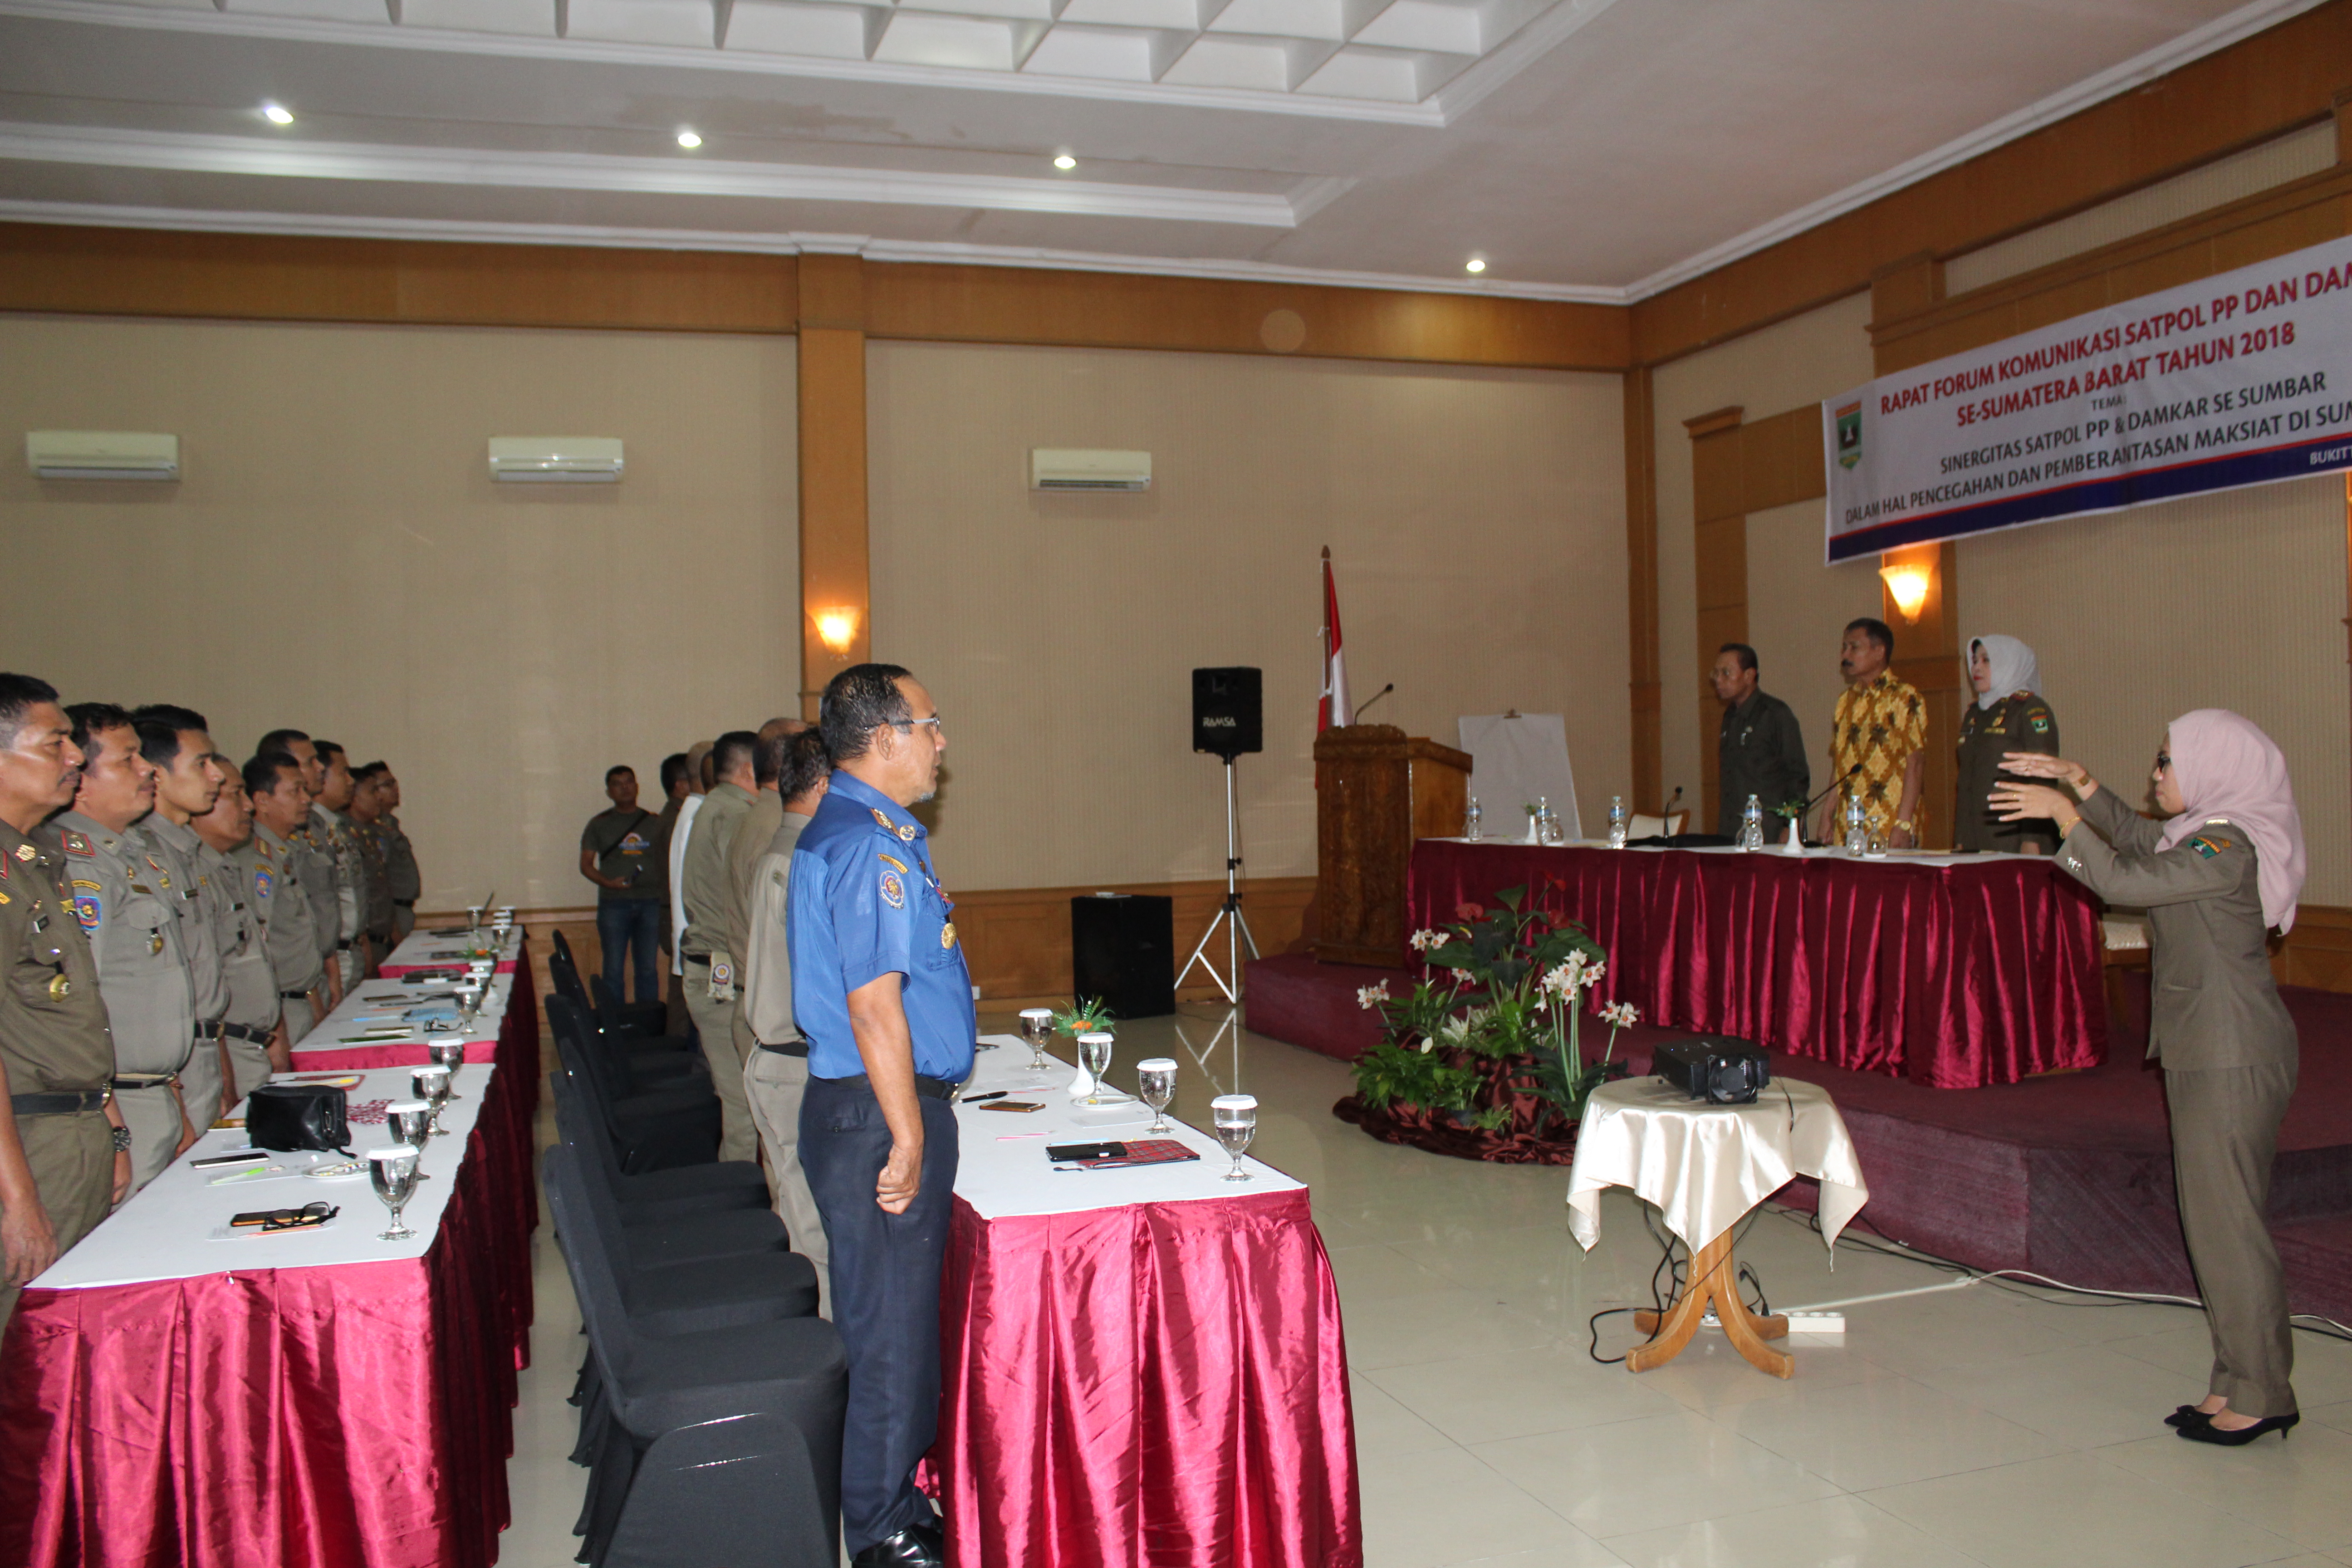 Rapat Forum Komunikasi  Satpol PP dan Damkar Se-Sumatera Barat Tahun 2018